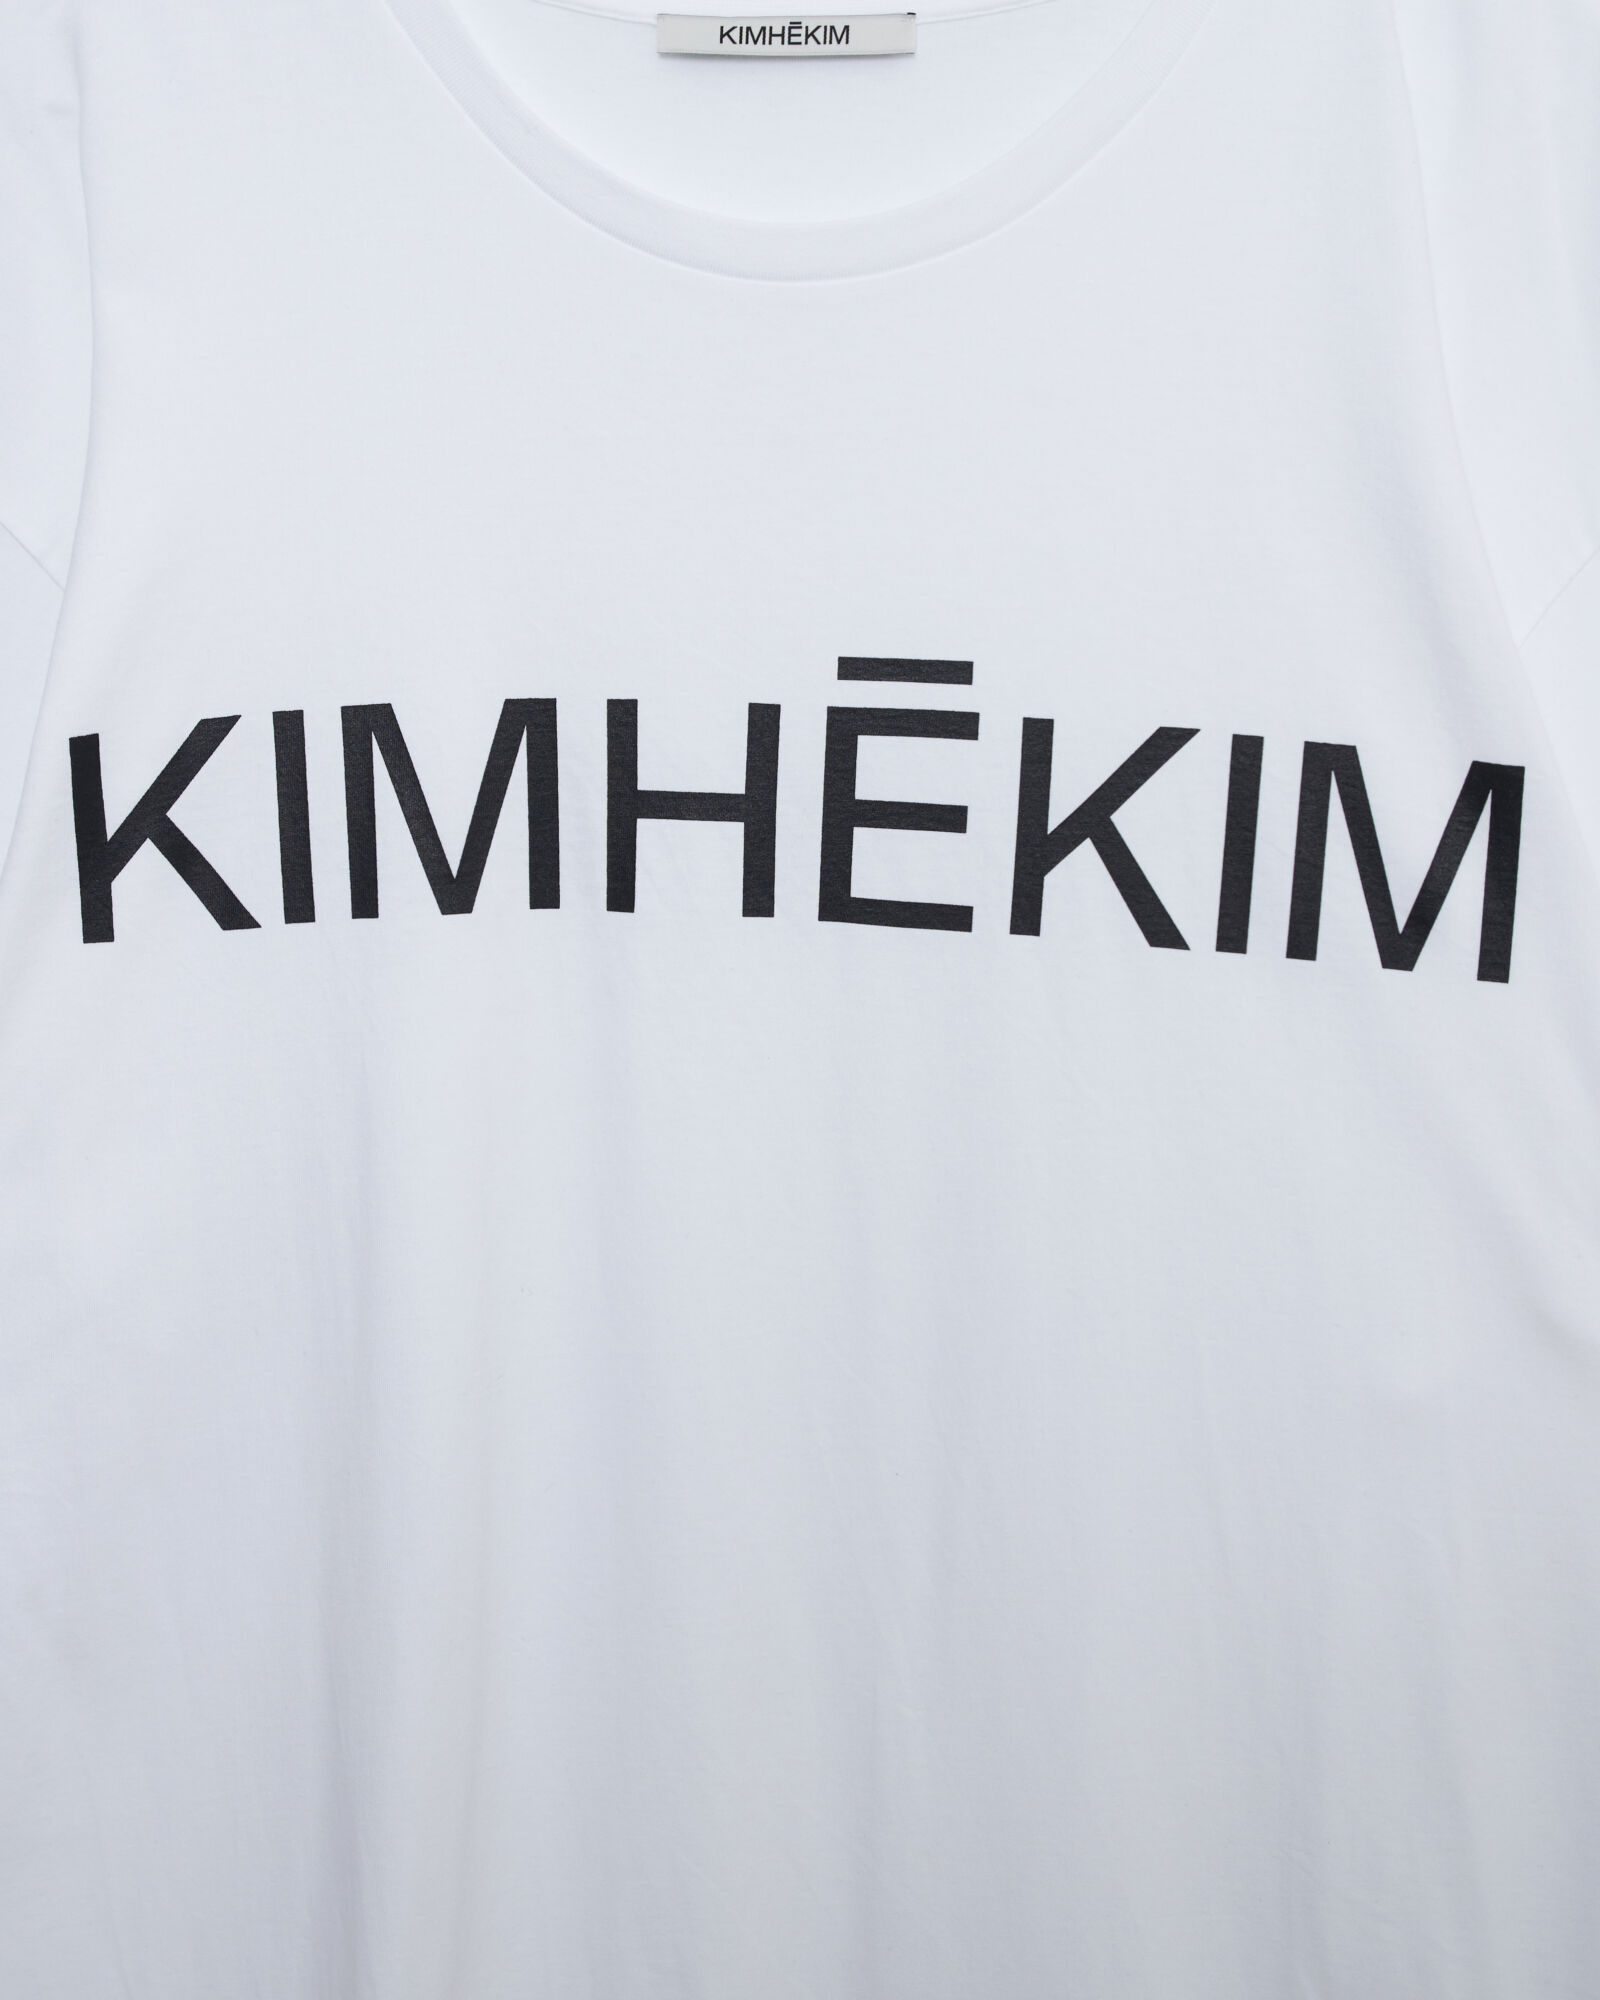 1.5 Kimhekim T-Shirt Dress (White) - Kimhekim